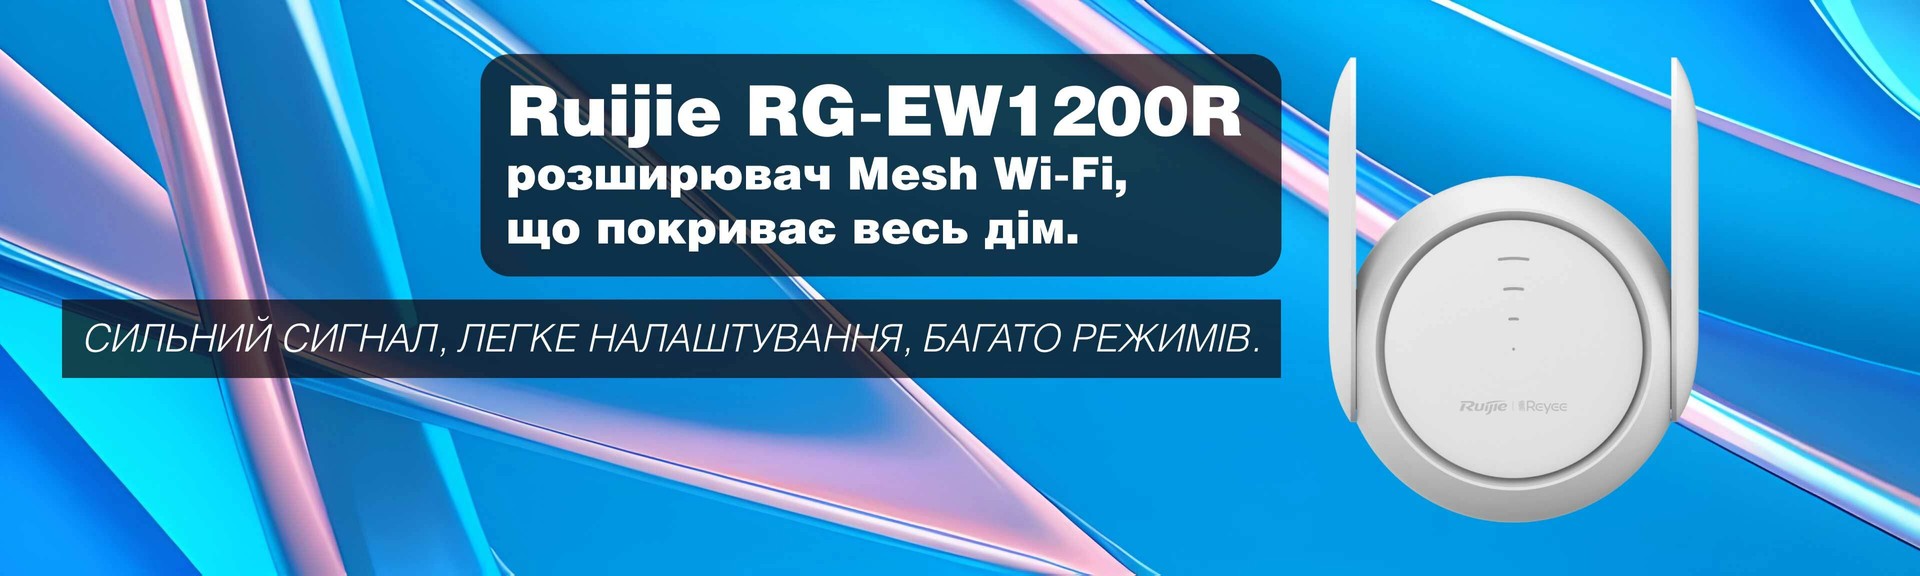 Ruijie RG-EW1200R Dual-Band Mesh Wi-Fi Extender